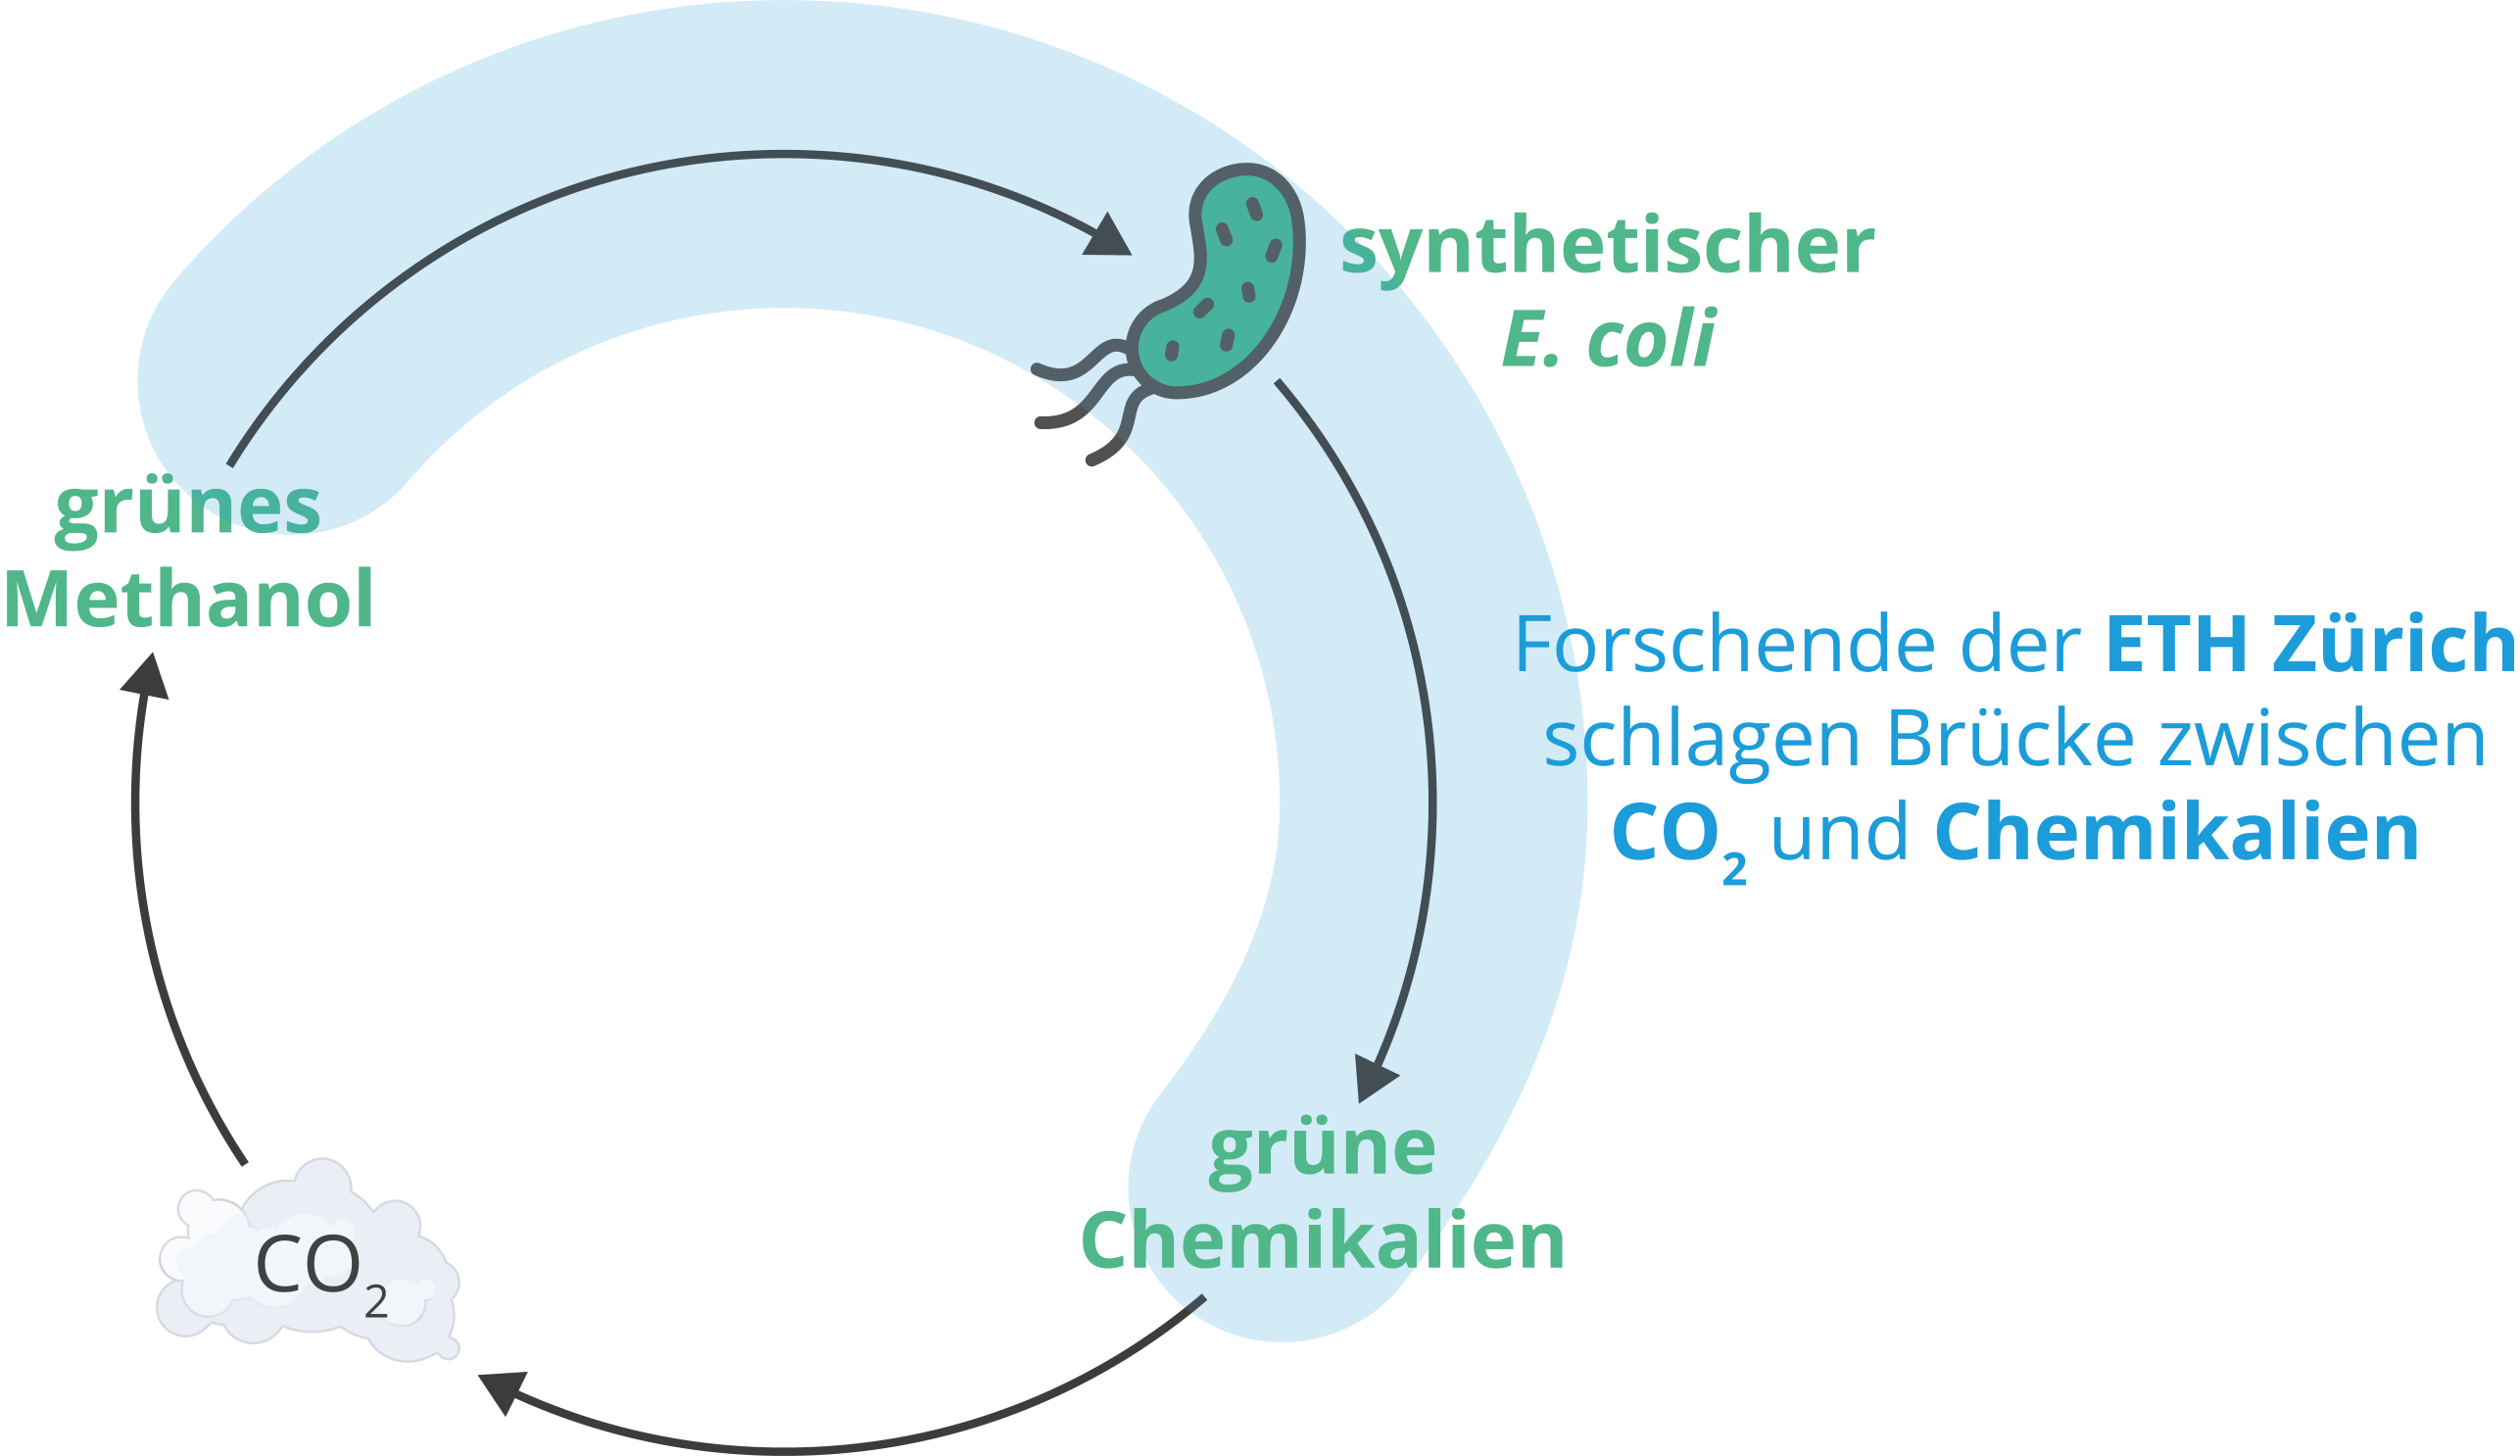 Kreislauf welcher die Brücke zwischen CO2 und Chemikalien beschreibt.